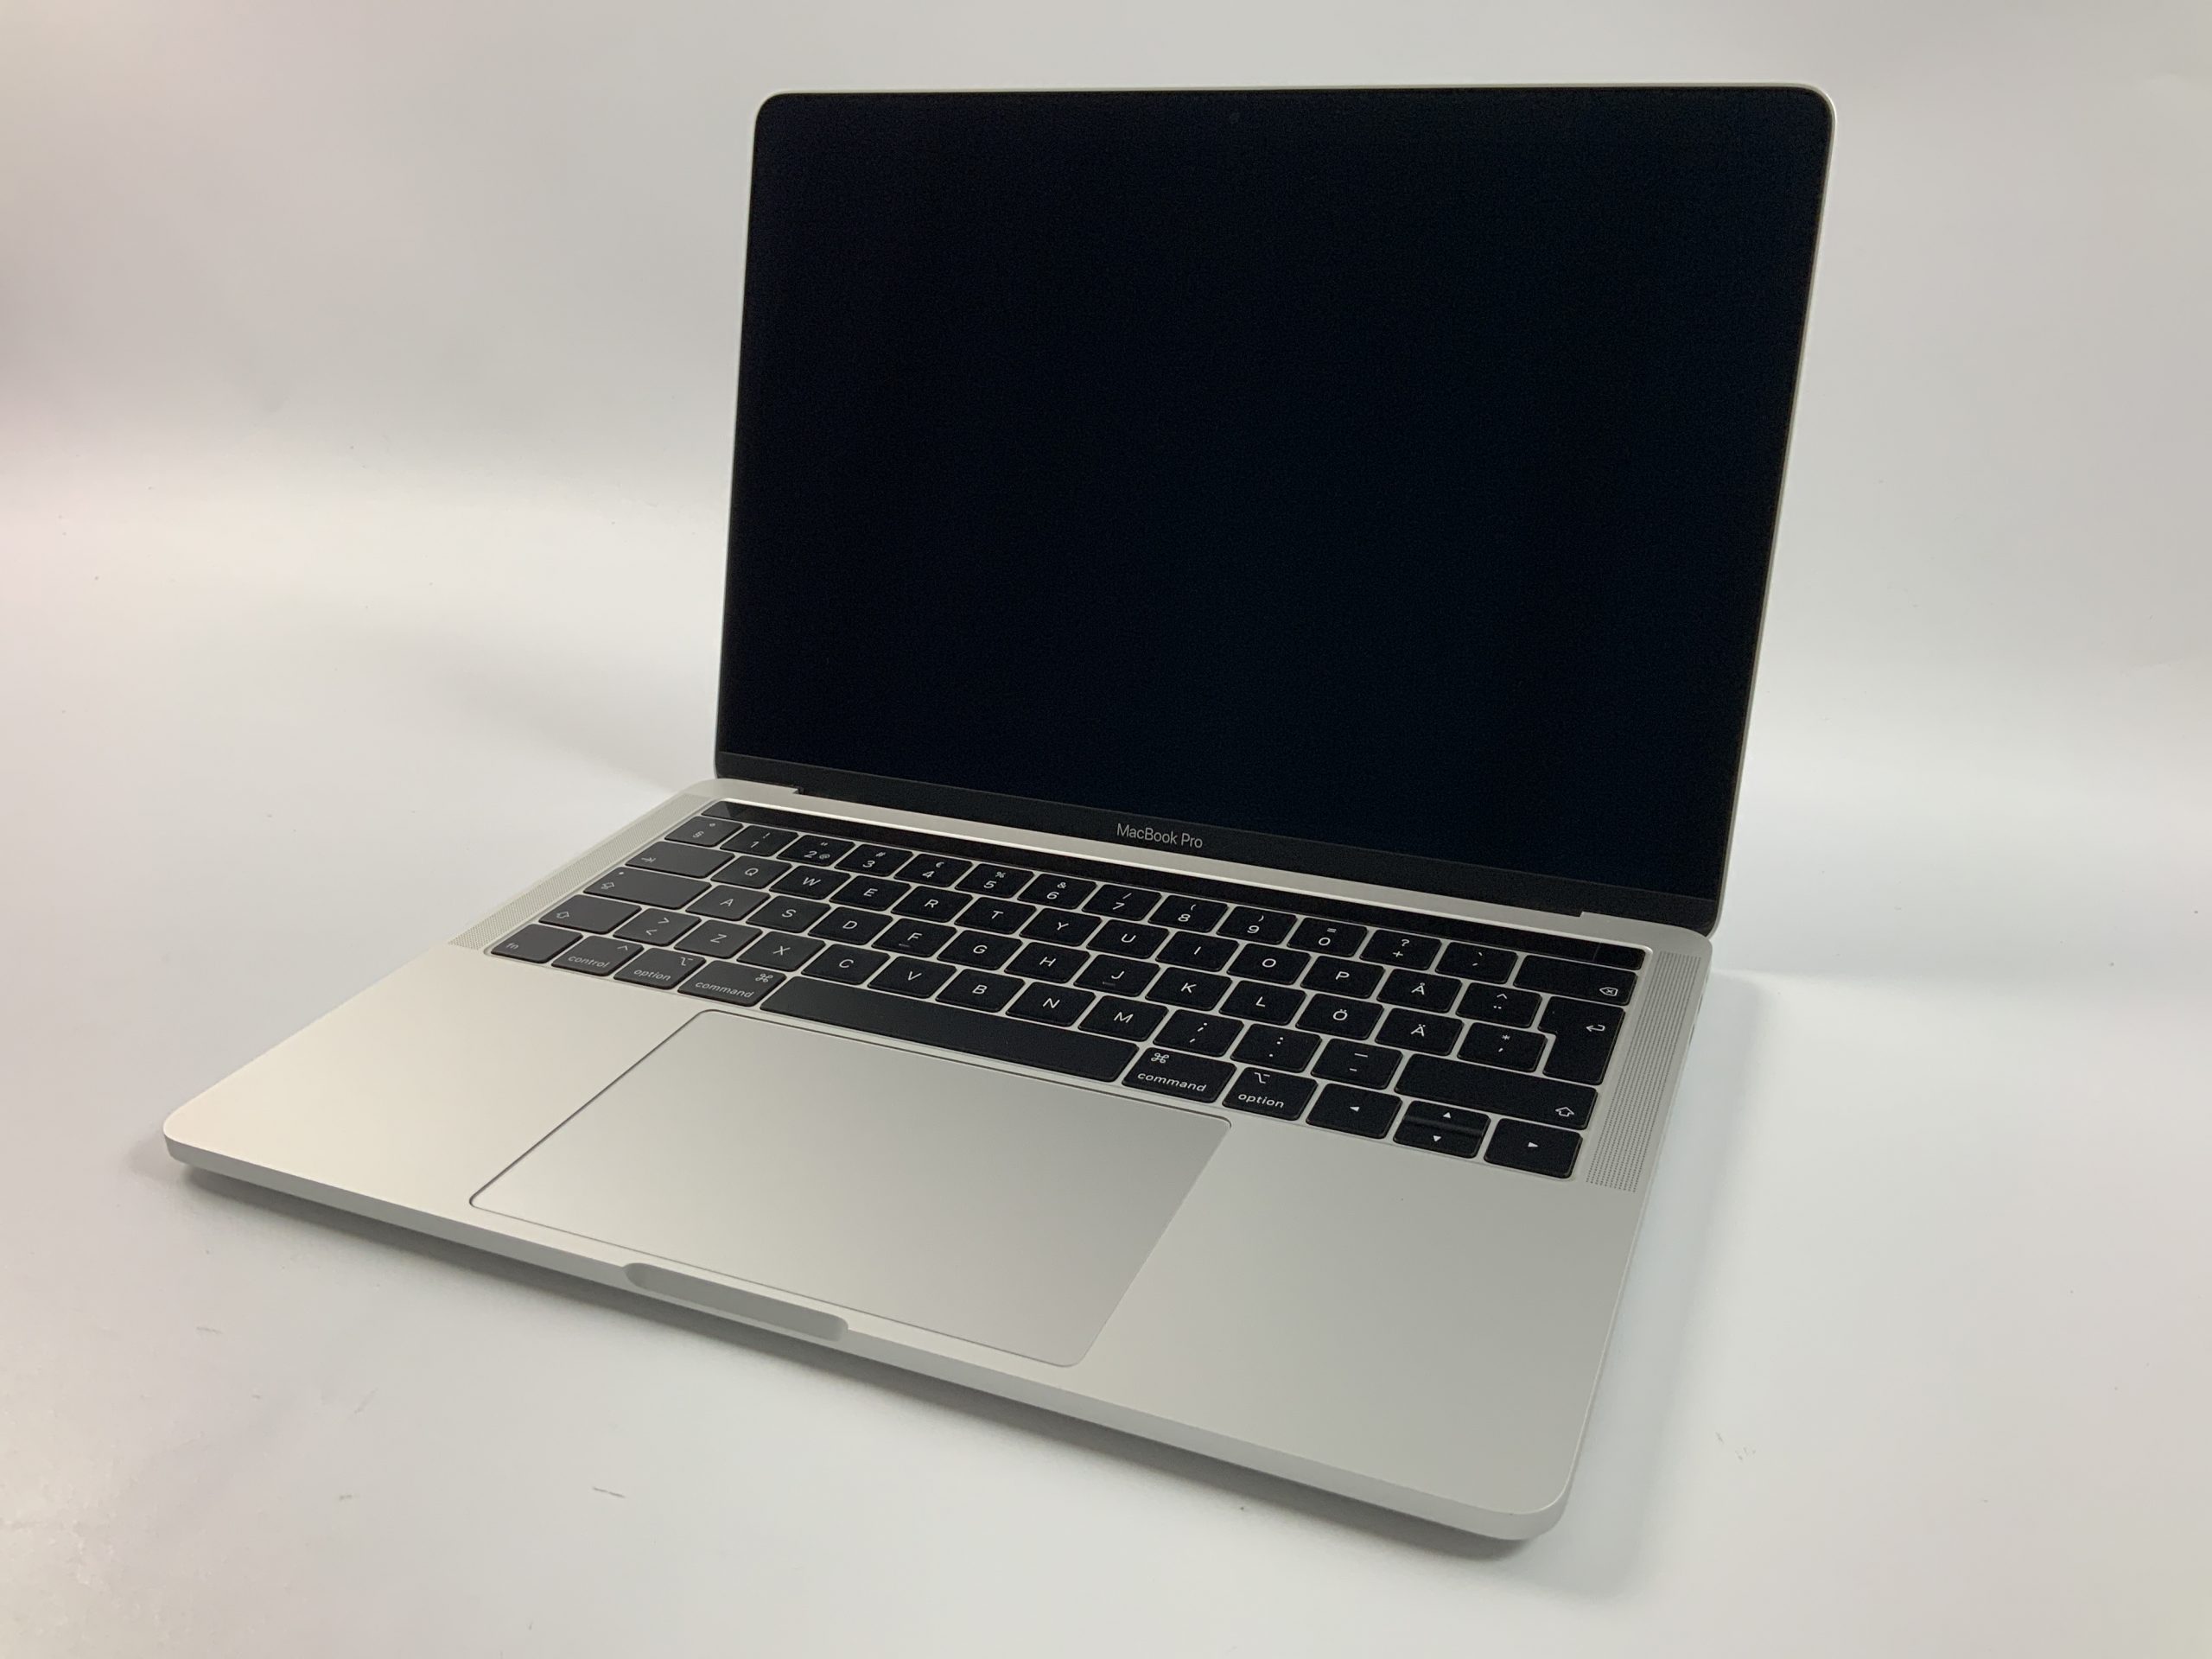 MacBook Pro 13" 4TBT Mid 2019 (Intel Quad-Core i5 2.4 GHz 8 GB RAM 256 GB SSD), Silver, Intel Quad-Core i5 2.4 GHz, 8 GB RAM, 256 GB SSD, bild 1